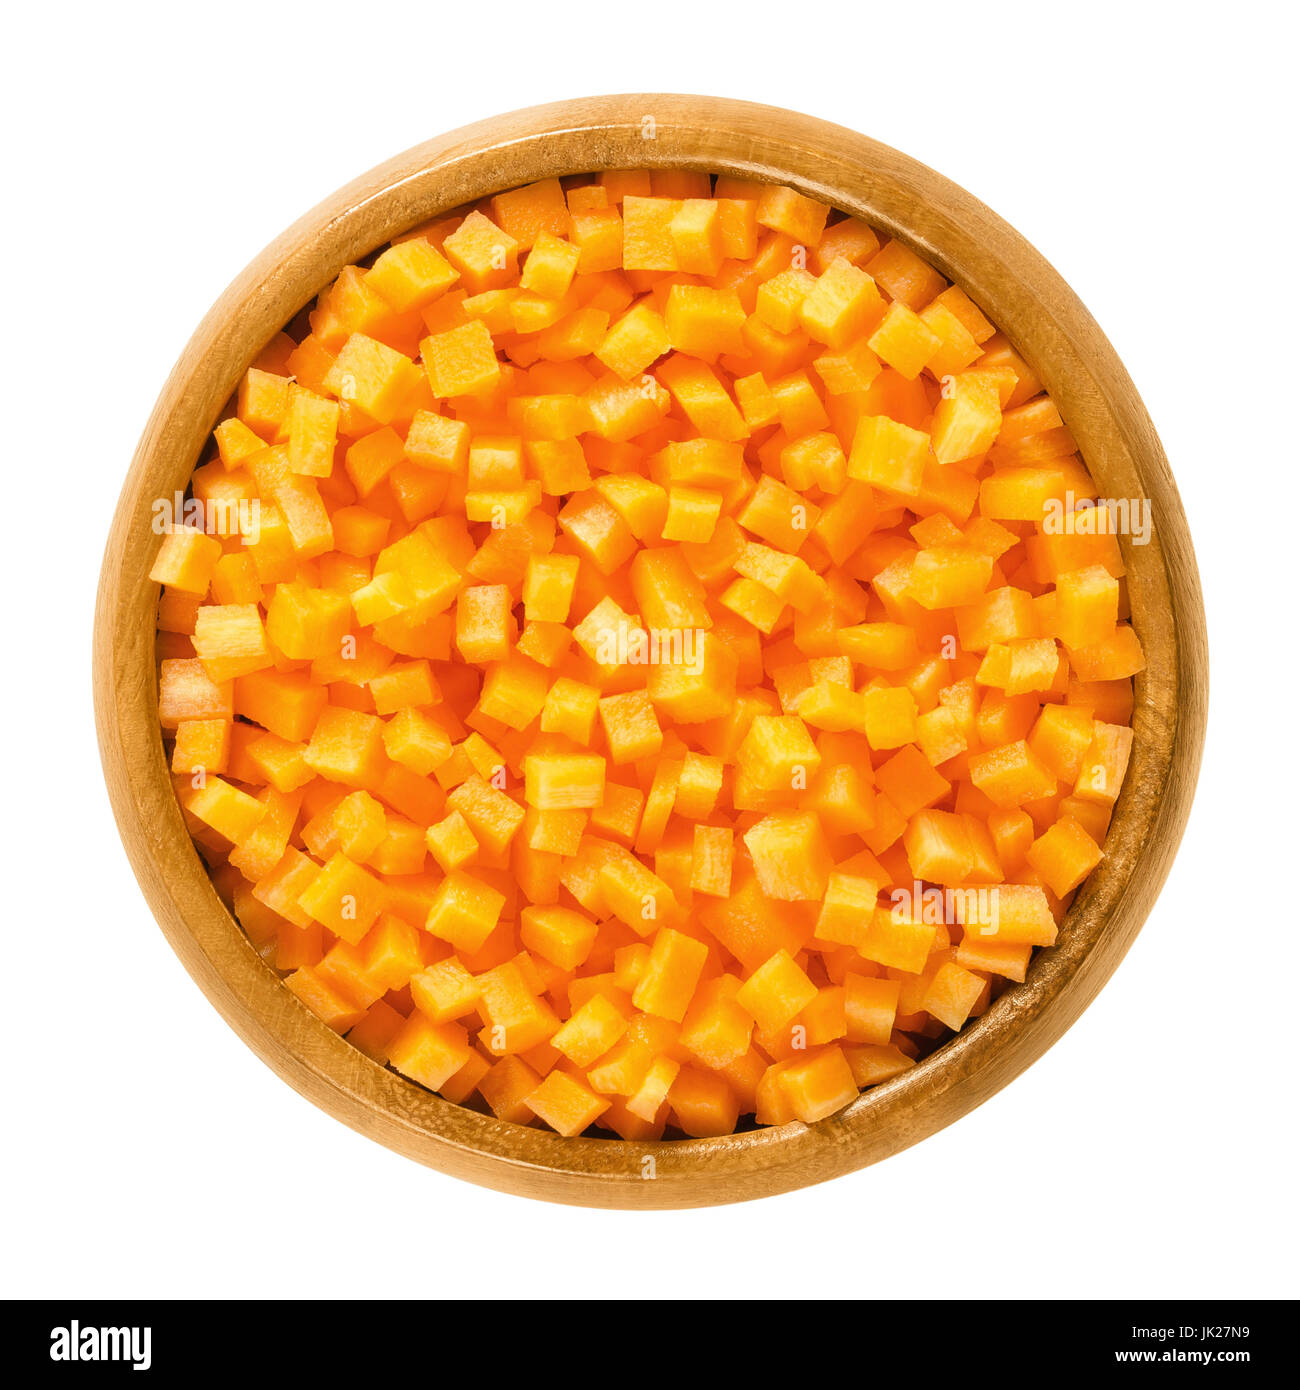 Cubes de carottes dans un bol en bois. Des morceaux croquants de Daucus carota, un légume-racine avec la couleur orange. Racine pivotante comestible. Macro photo alimentaire isolé. Banque D'Images